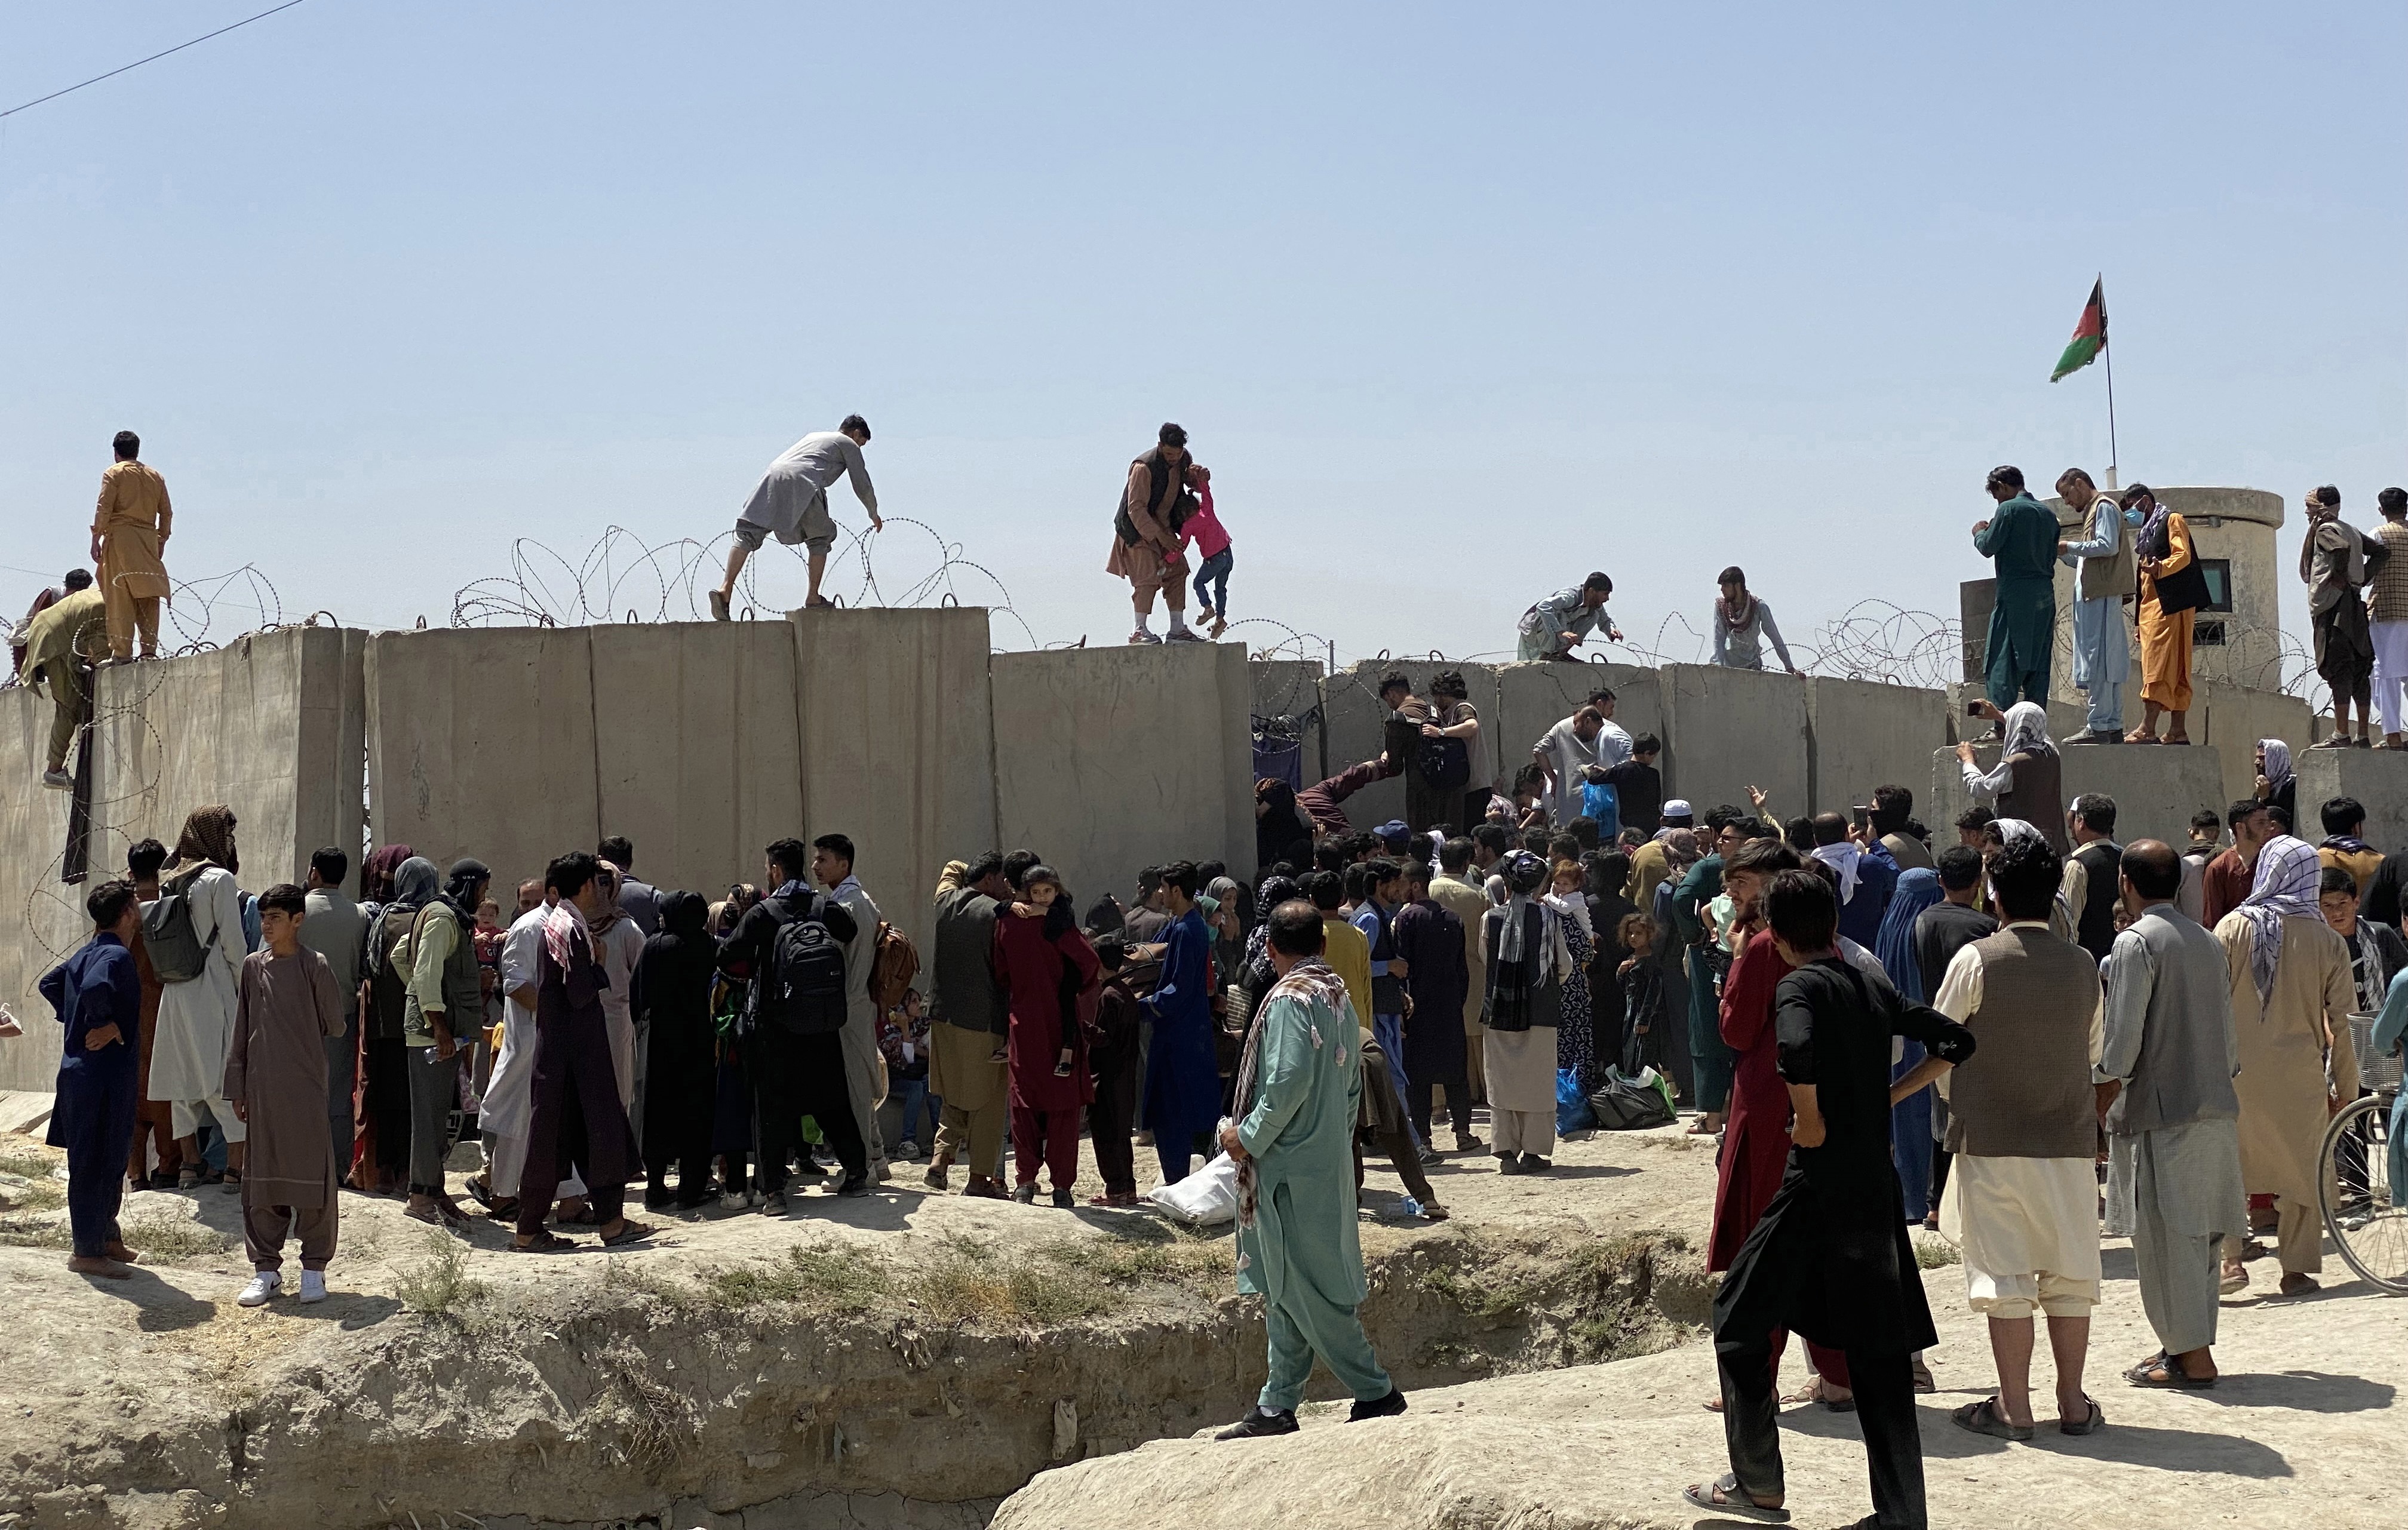 Afganos se agolpan a lo largo del muro del aeropuerto internacional Hamid Karzai antes de saltarlo en un intento de abandonar el país, este lunes en Kabul, después de darse a conocer de que el propio presidente afgano, Ashra Ghani, huyera en secreto. EFE/STRINGER
